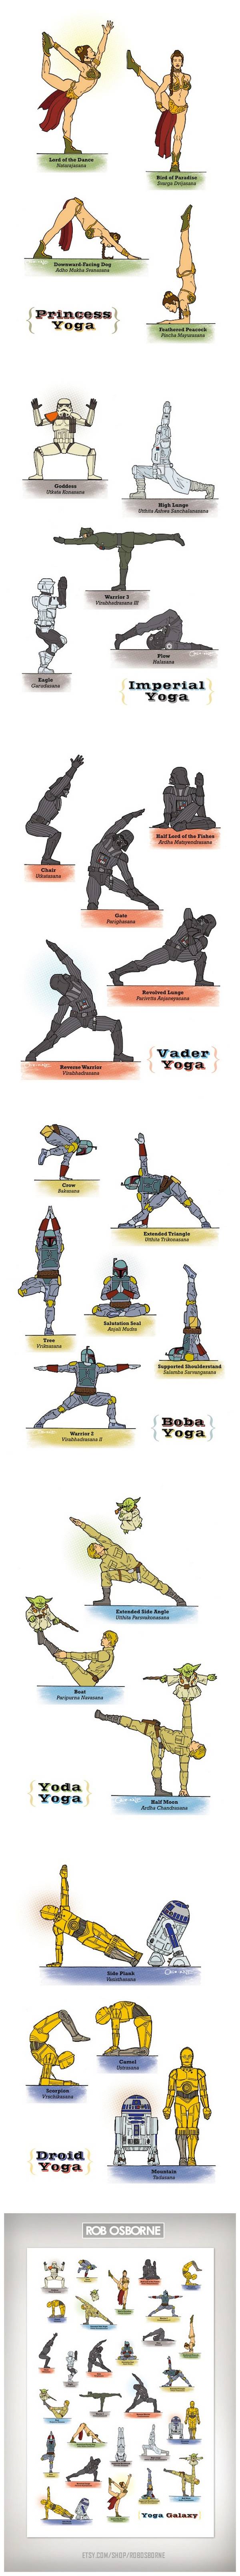 Star Wars Yoga - Las poses de los personajes de la película 1